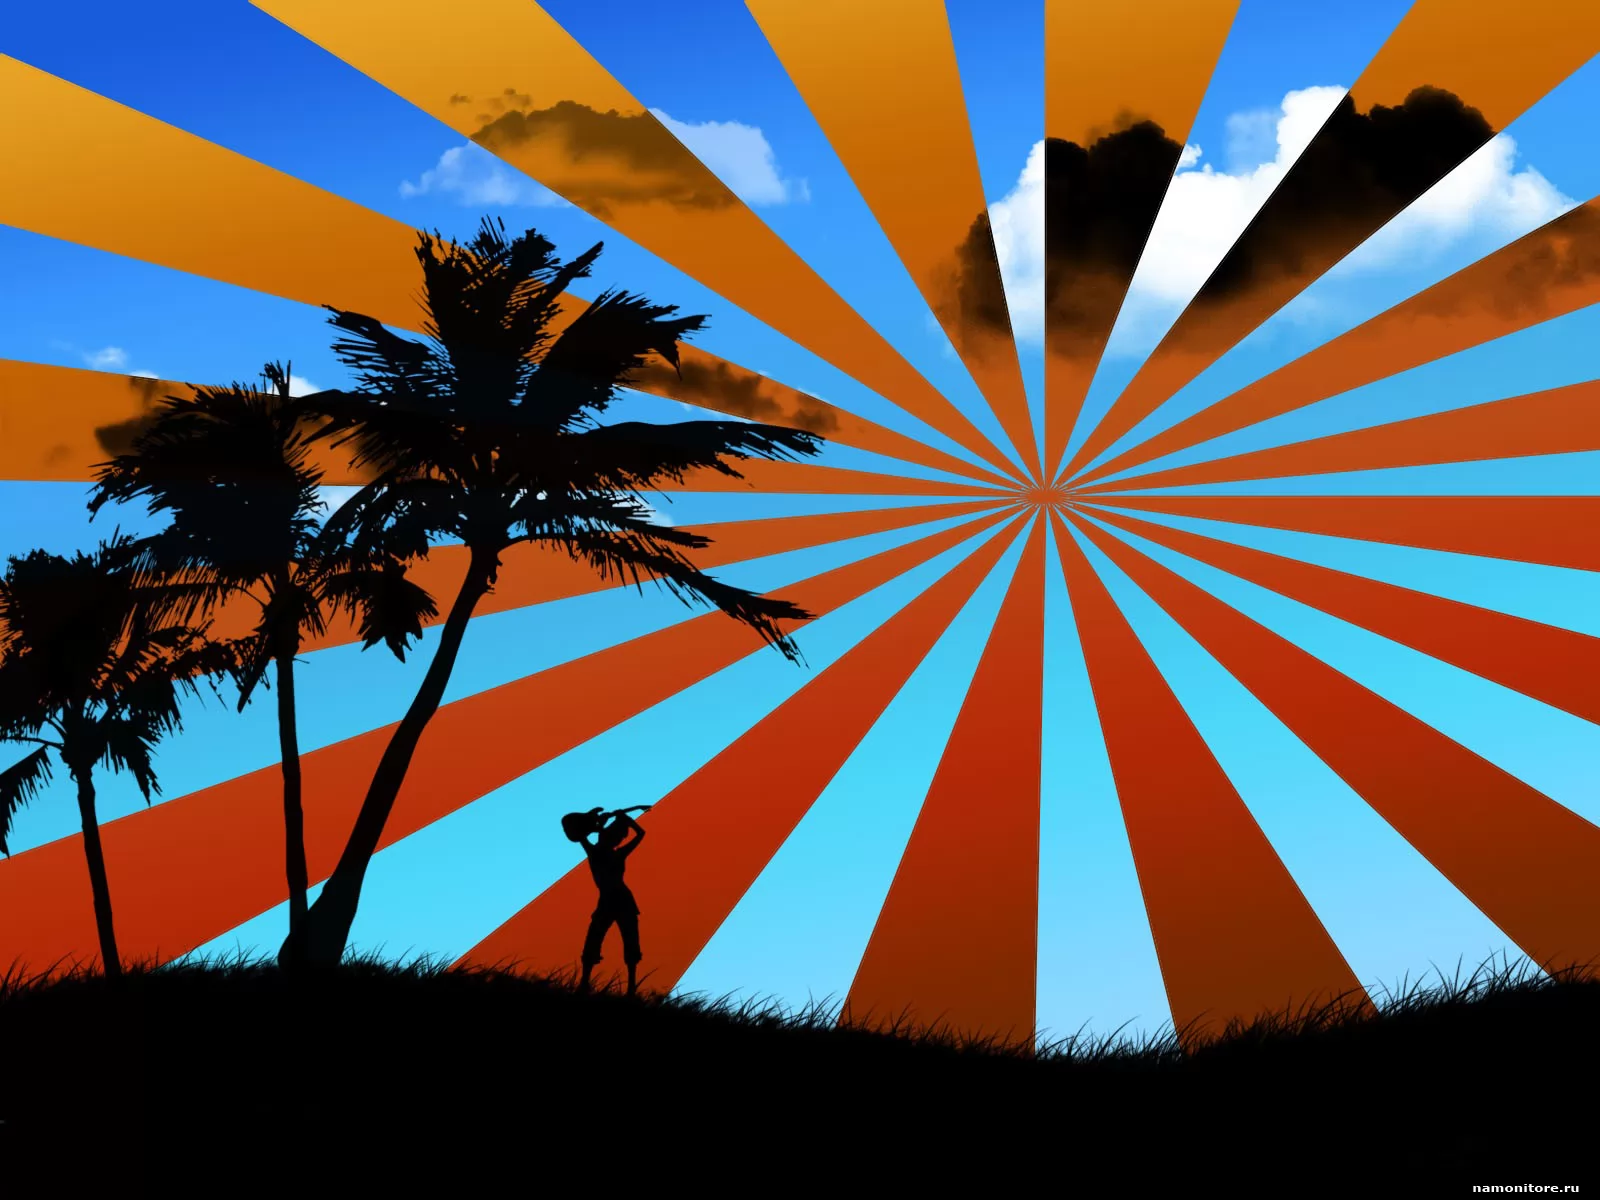 The Radioactive sun, drawed, palm trees x